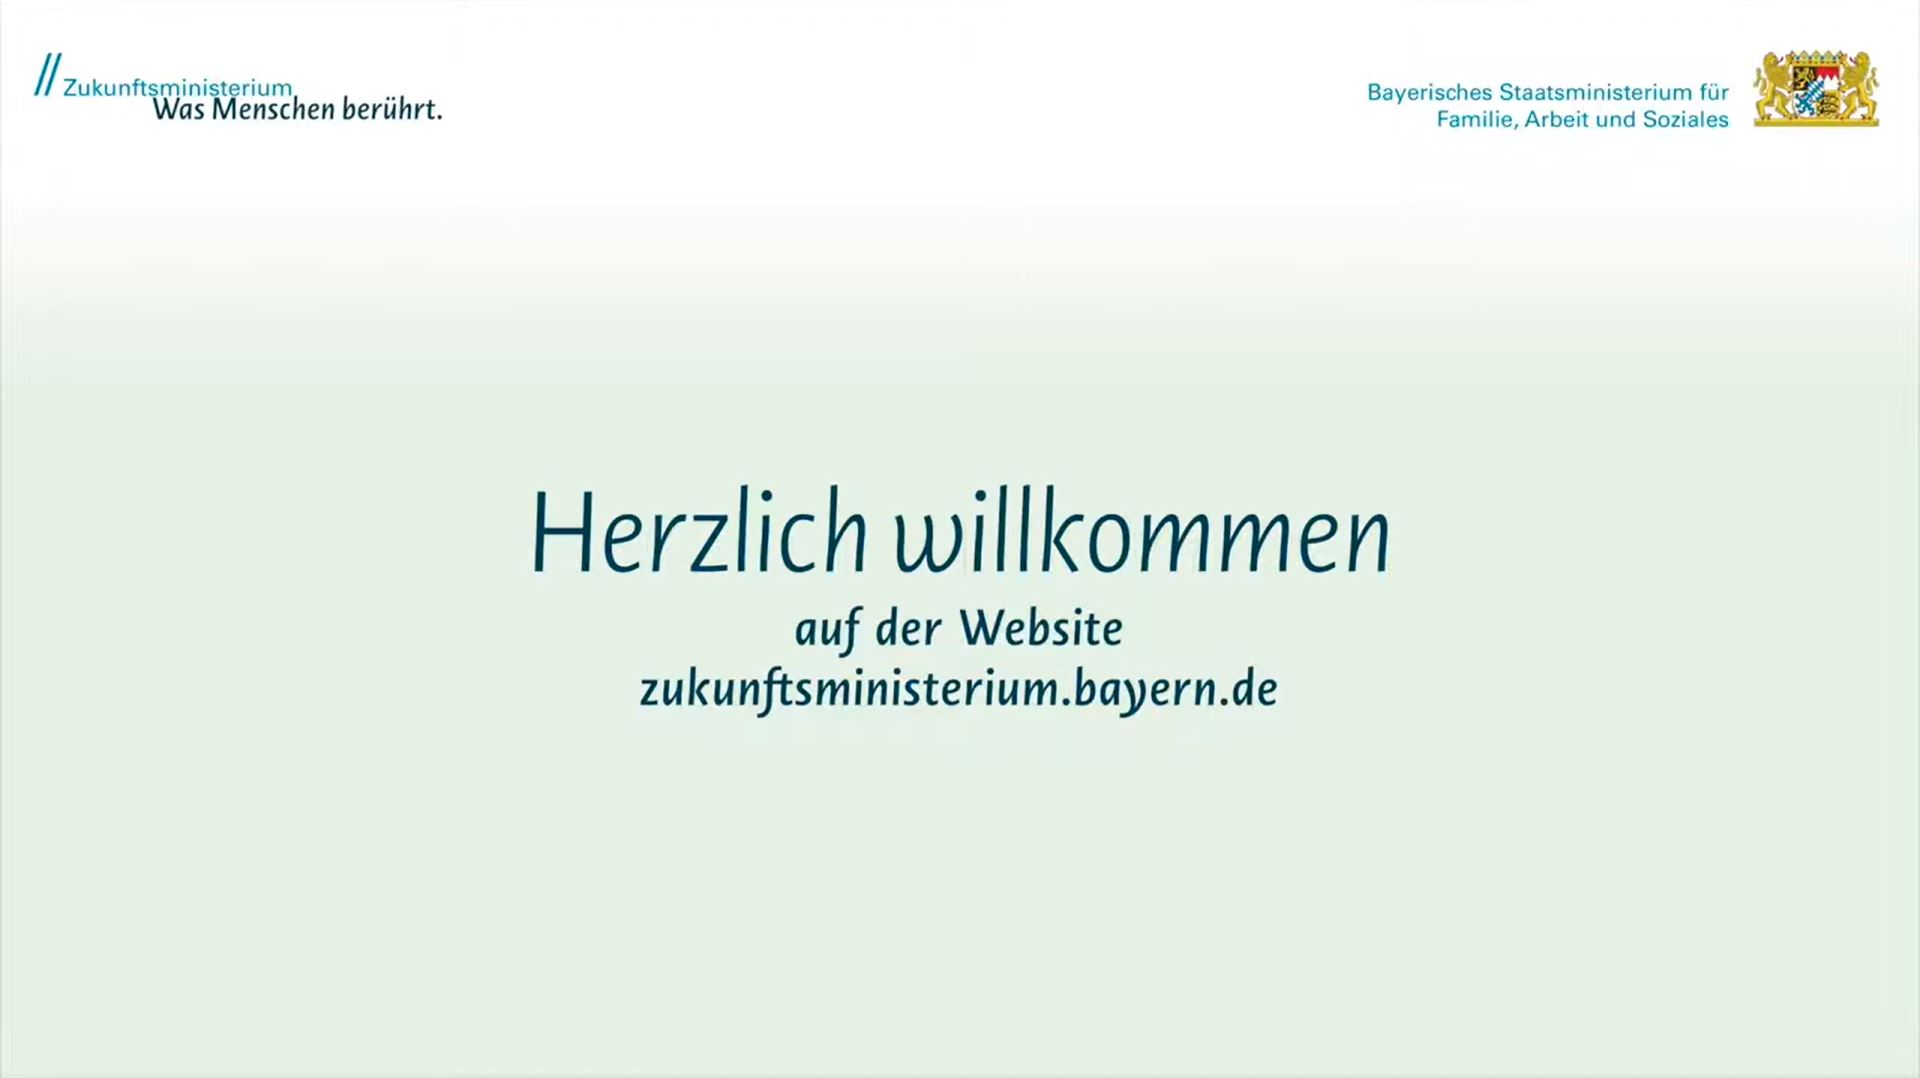 Das Video informiert über das Bayerische Staatsministerium für Familie, Arbeit und Soziales